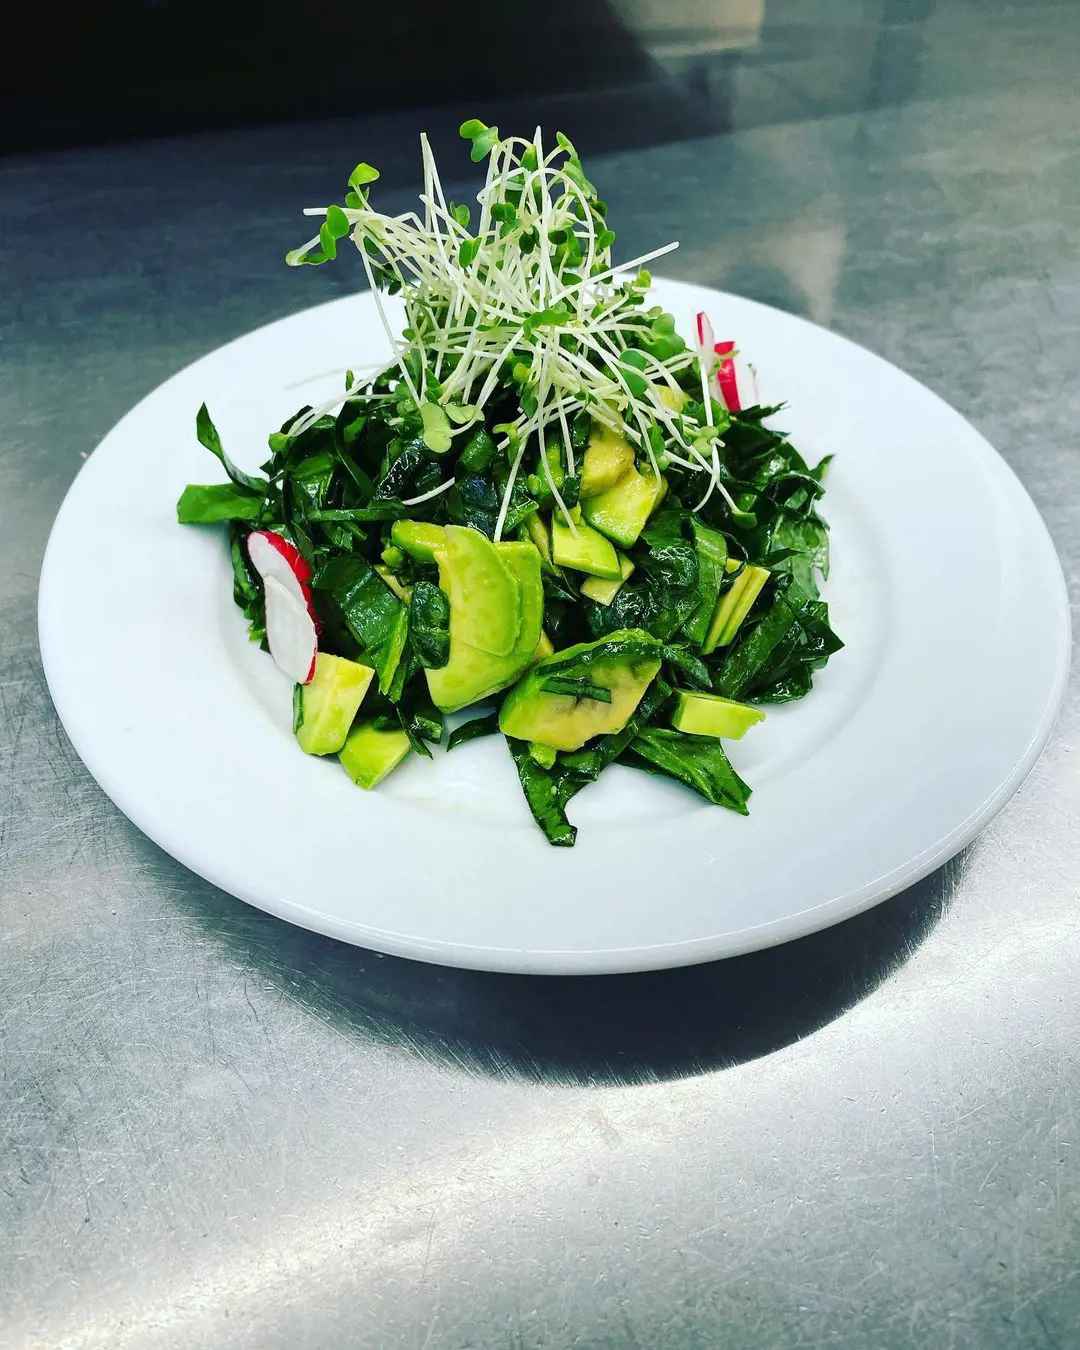 Spinach & avocado salad